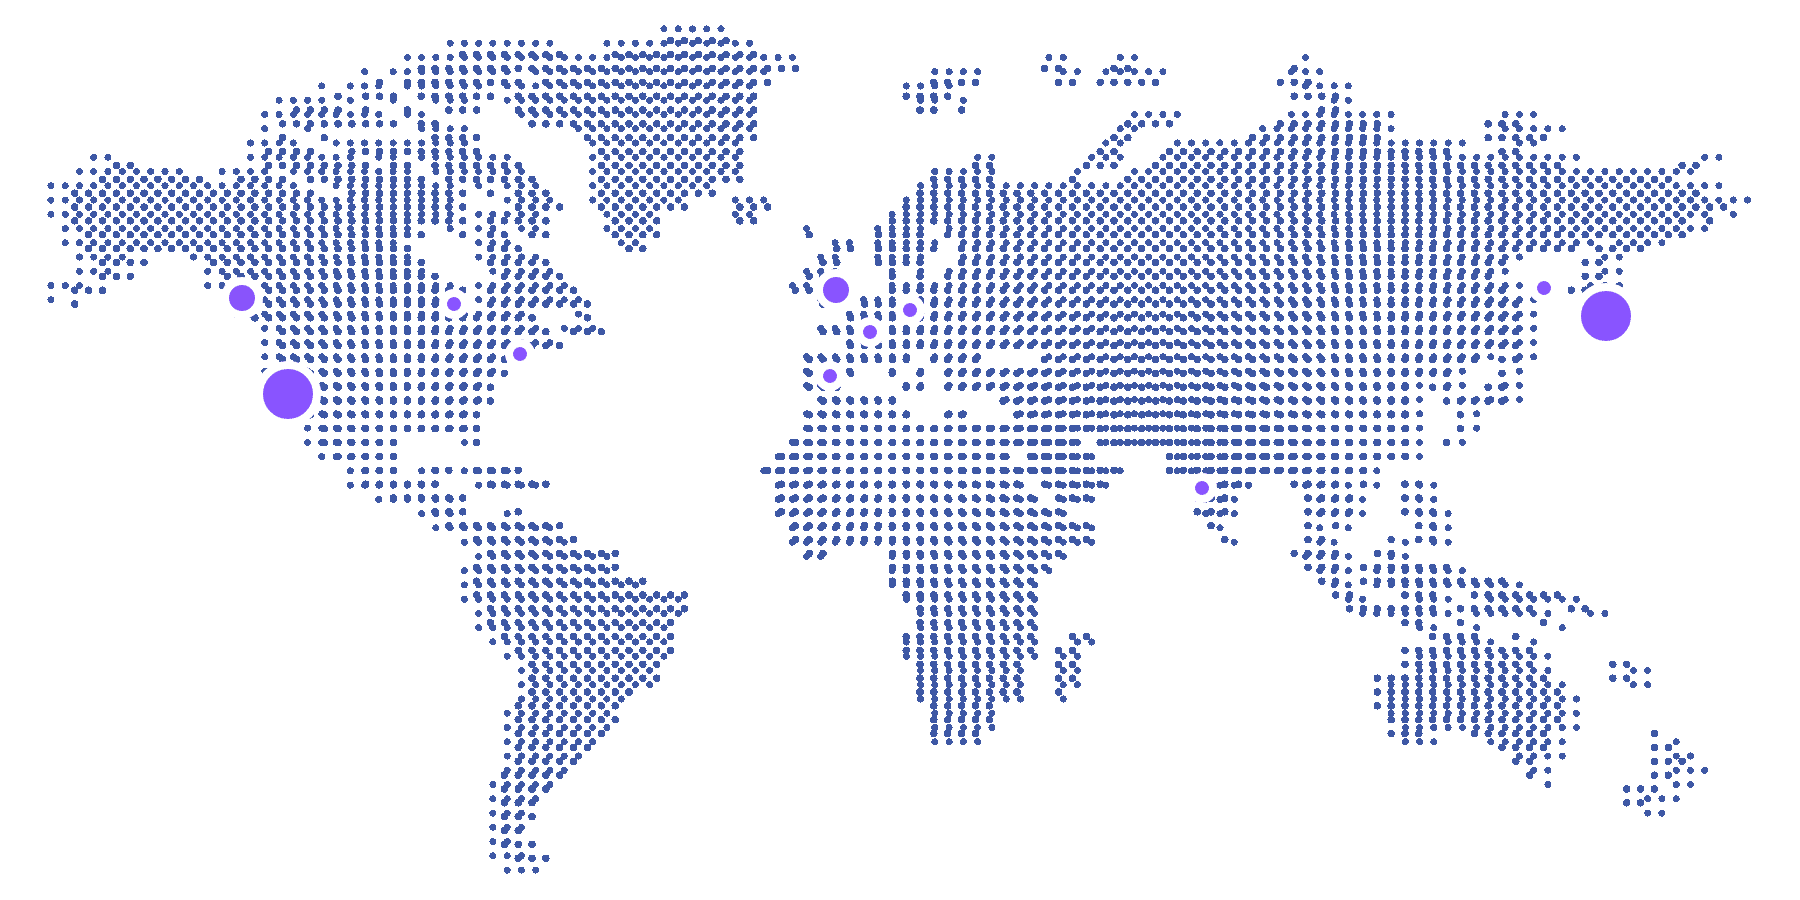 世界に5つあるトレジャーデータのオフィスの位置を示した地図